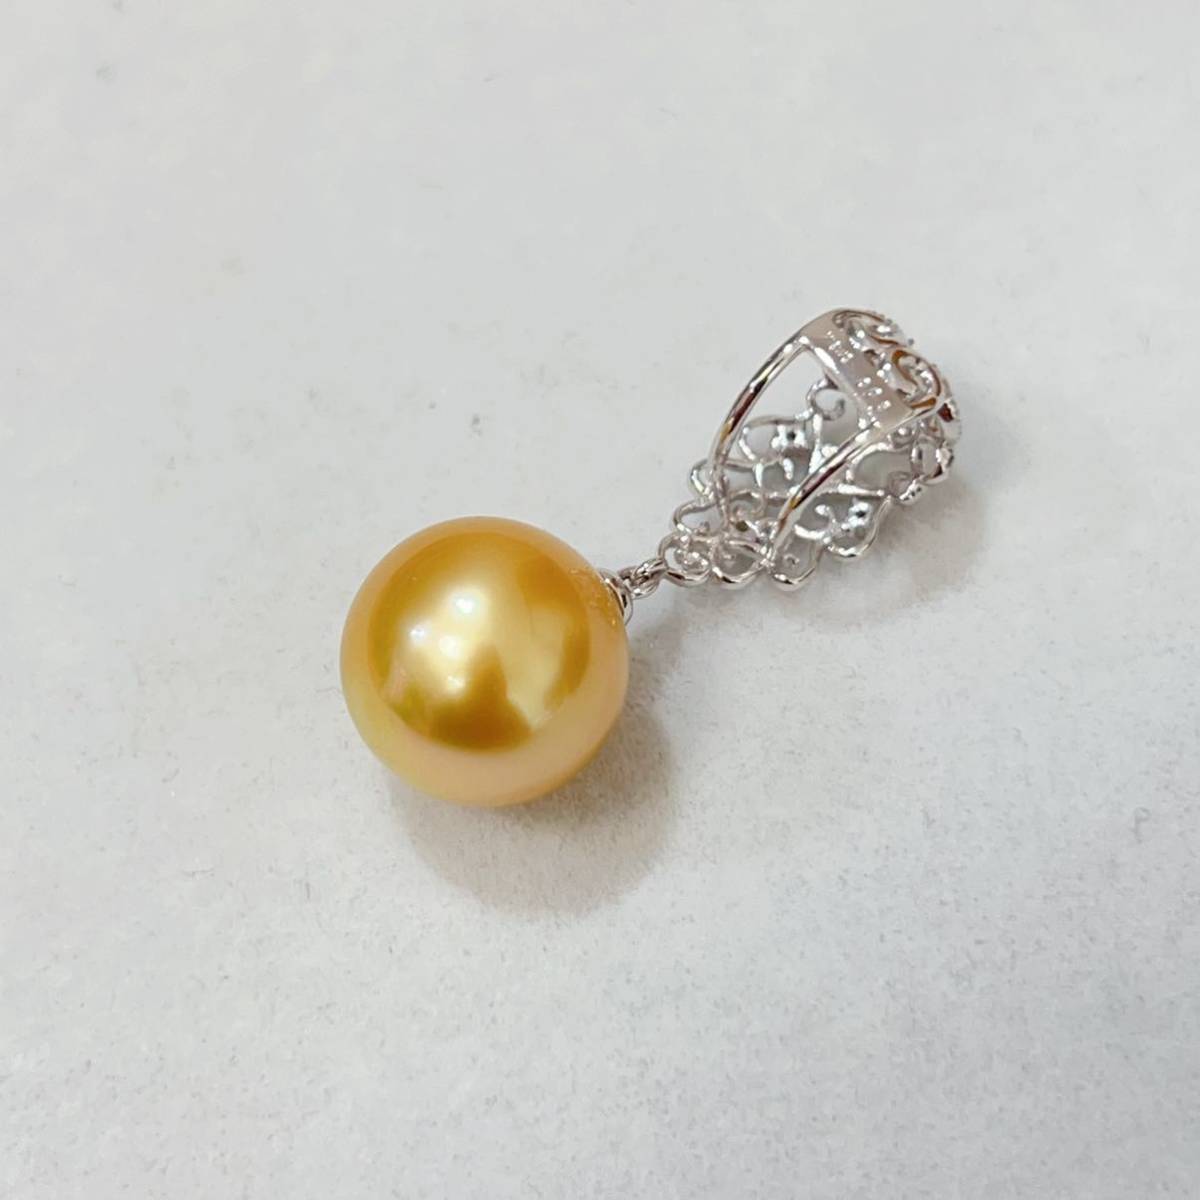 K18WG 南洋 ゴールドパール ダイヤ ネックレス ペンダントトップ 13mm 真珠 白蝶真珠